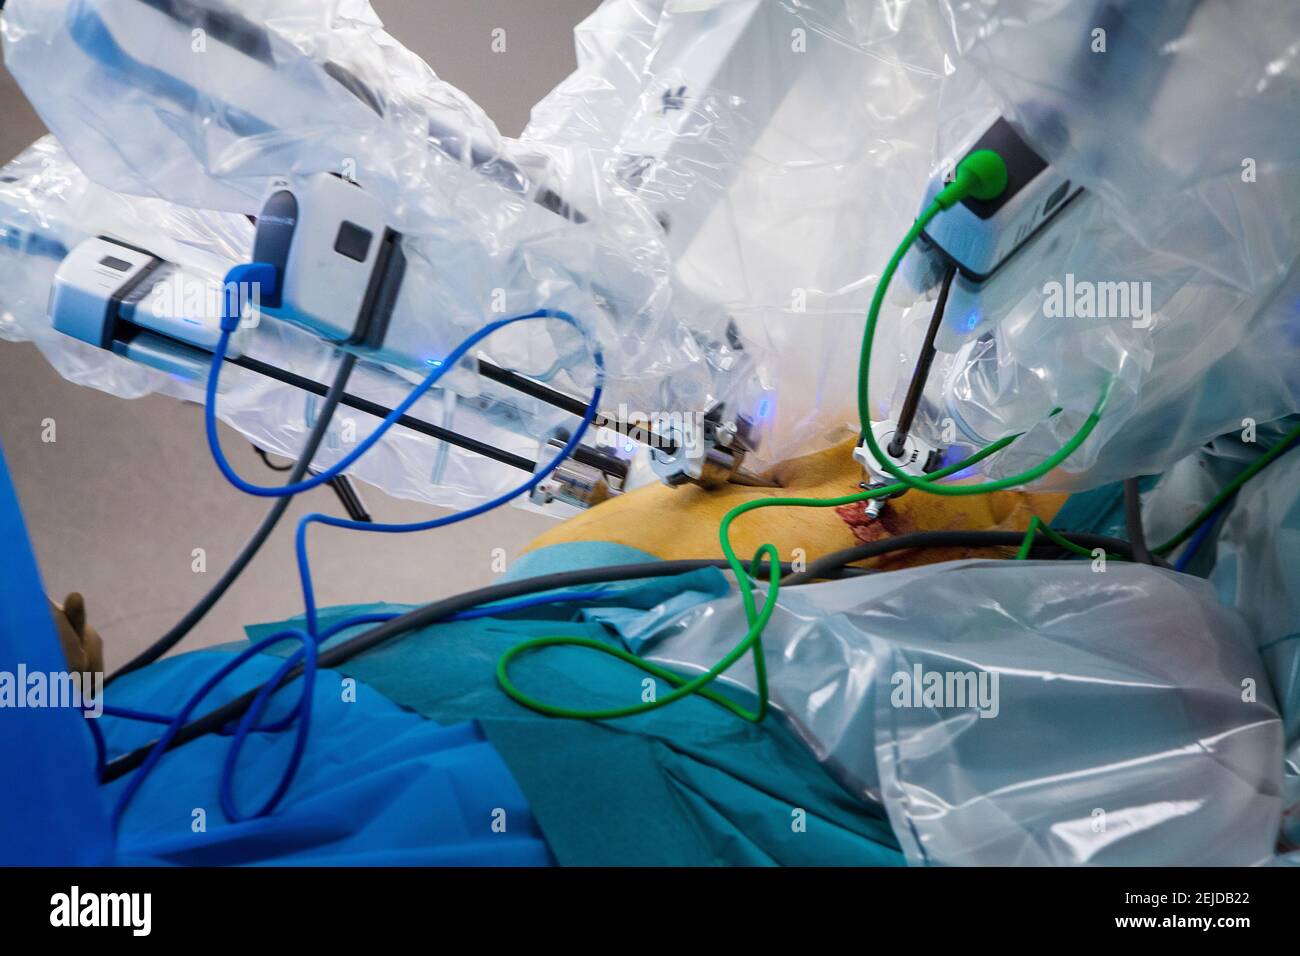 Dans la salle d'opération, une hystérectomie avec un robot chirurgical. Banque D'Images